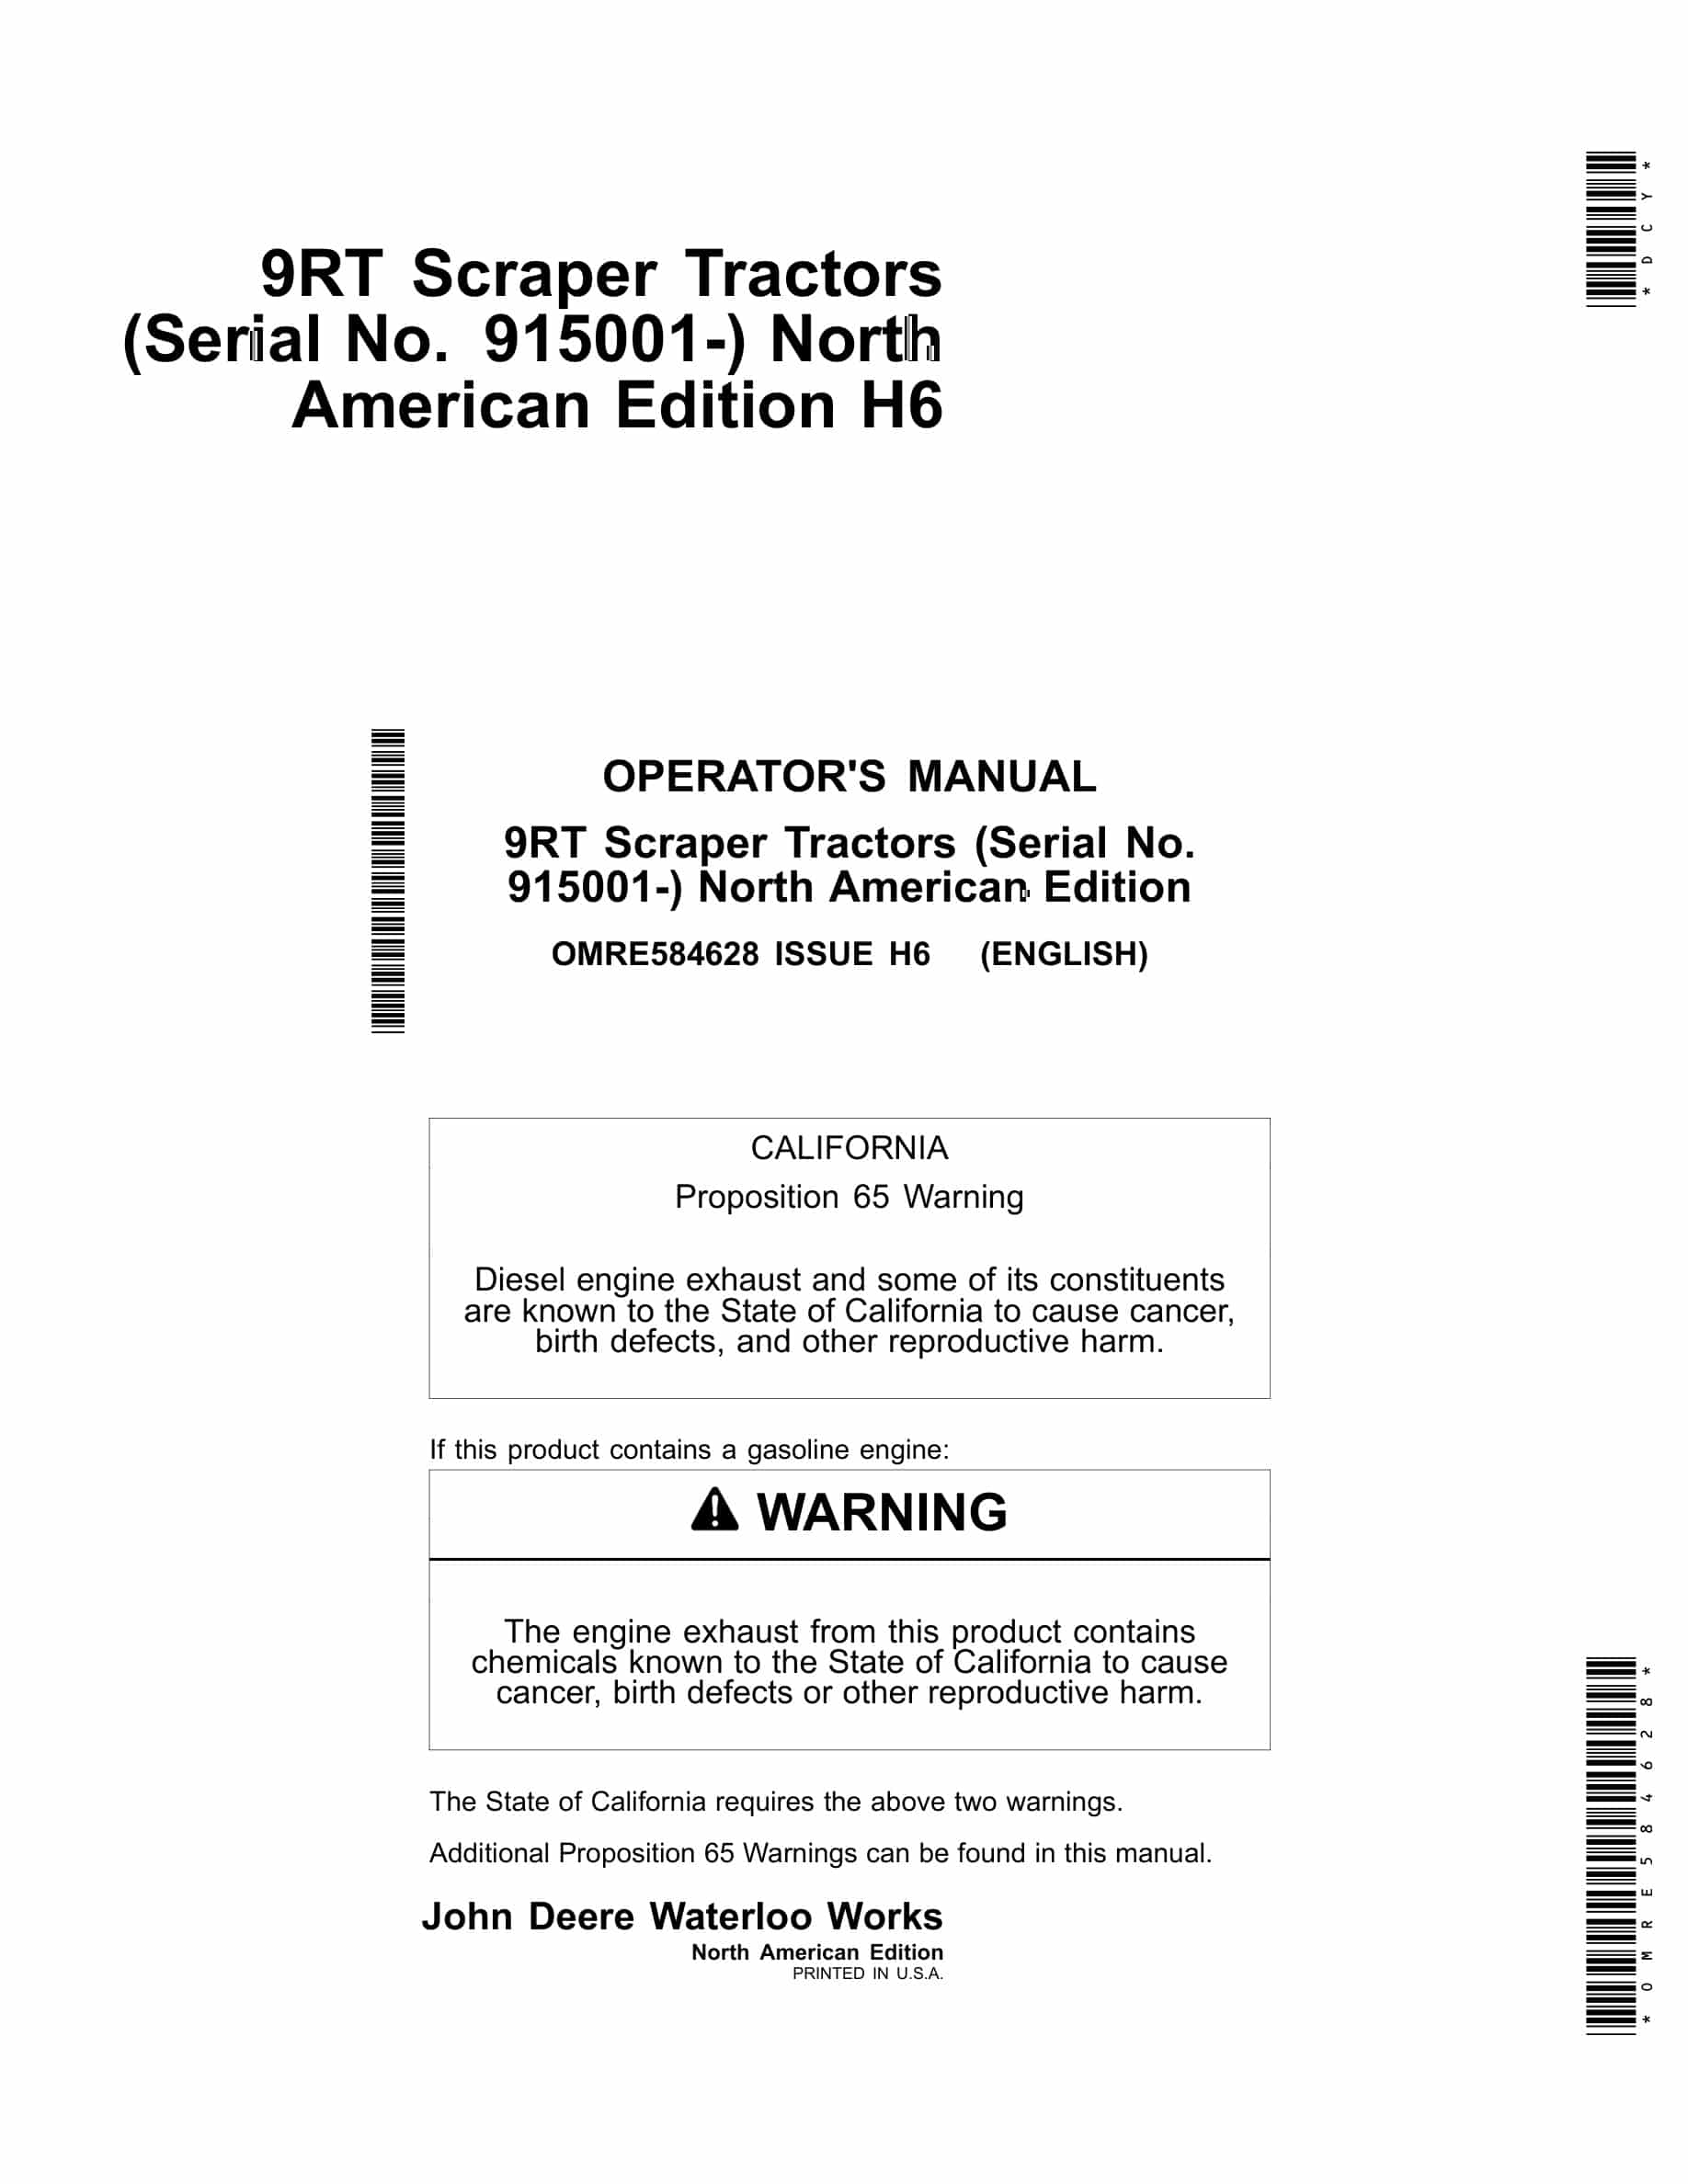 John Deere 9RT Tractor Operator Manual OMRE584628-1